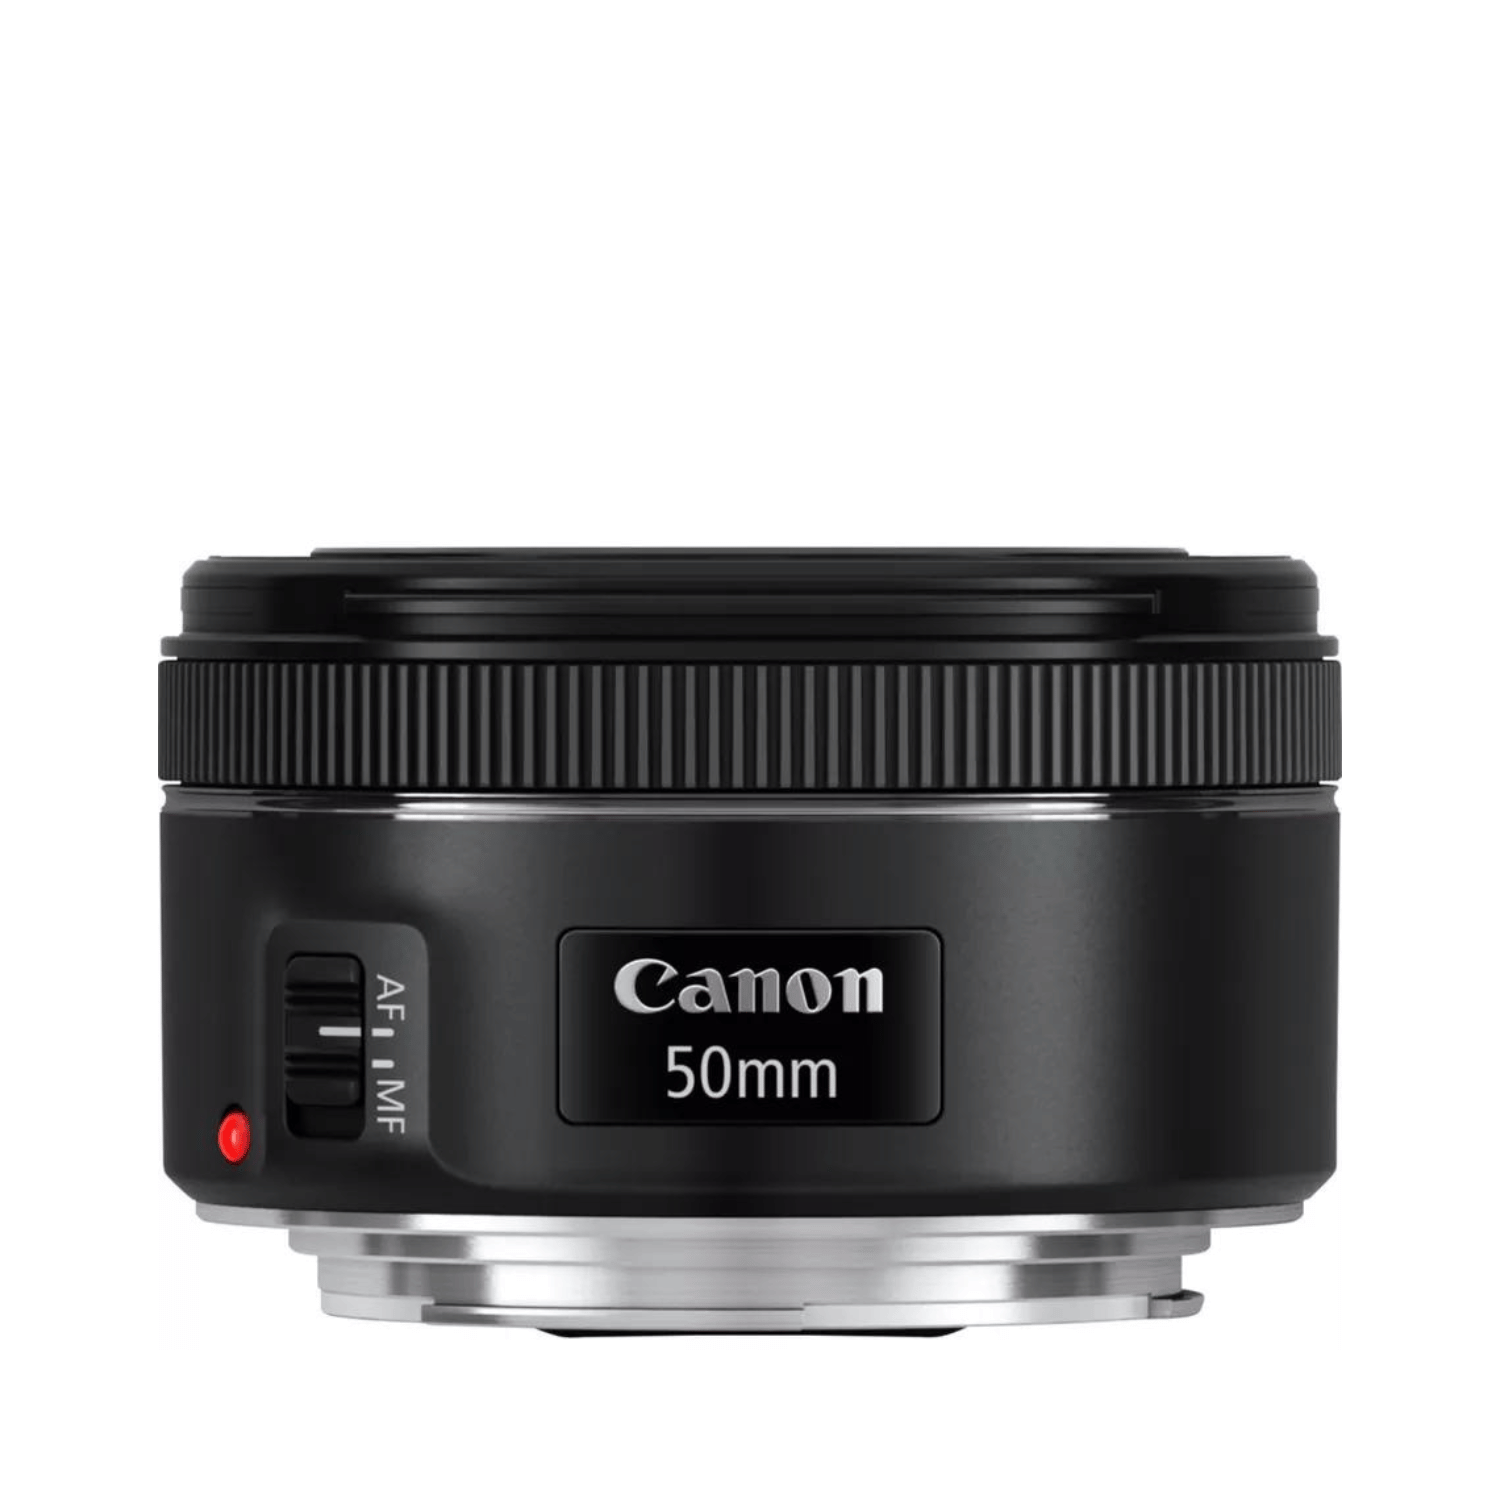 Canon EF 50mm f1.8 STM -Gar. Canon Italia -Cine Sud è da 48 anni sul mercato! 0570C005